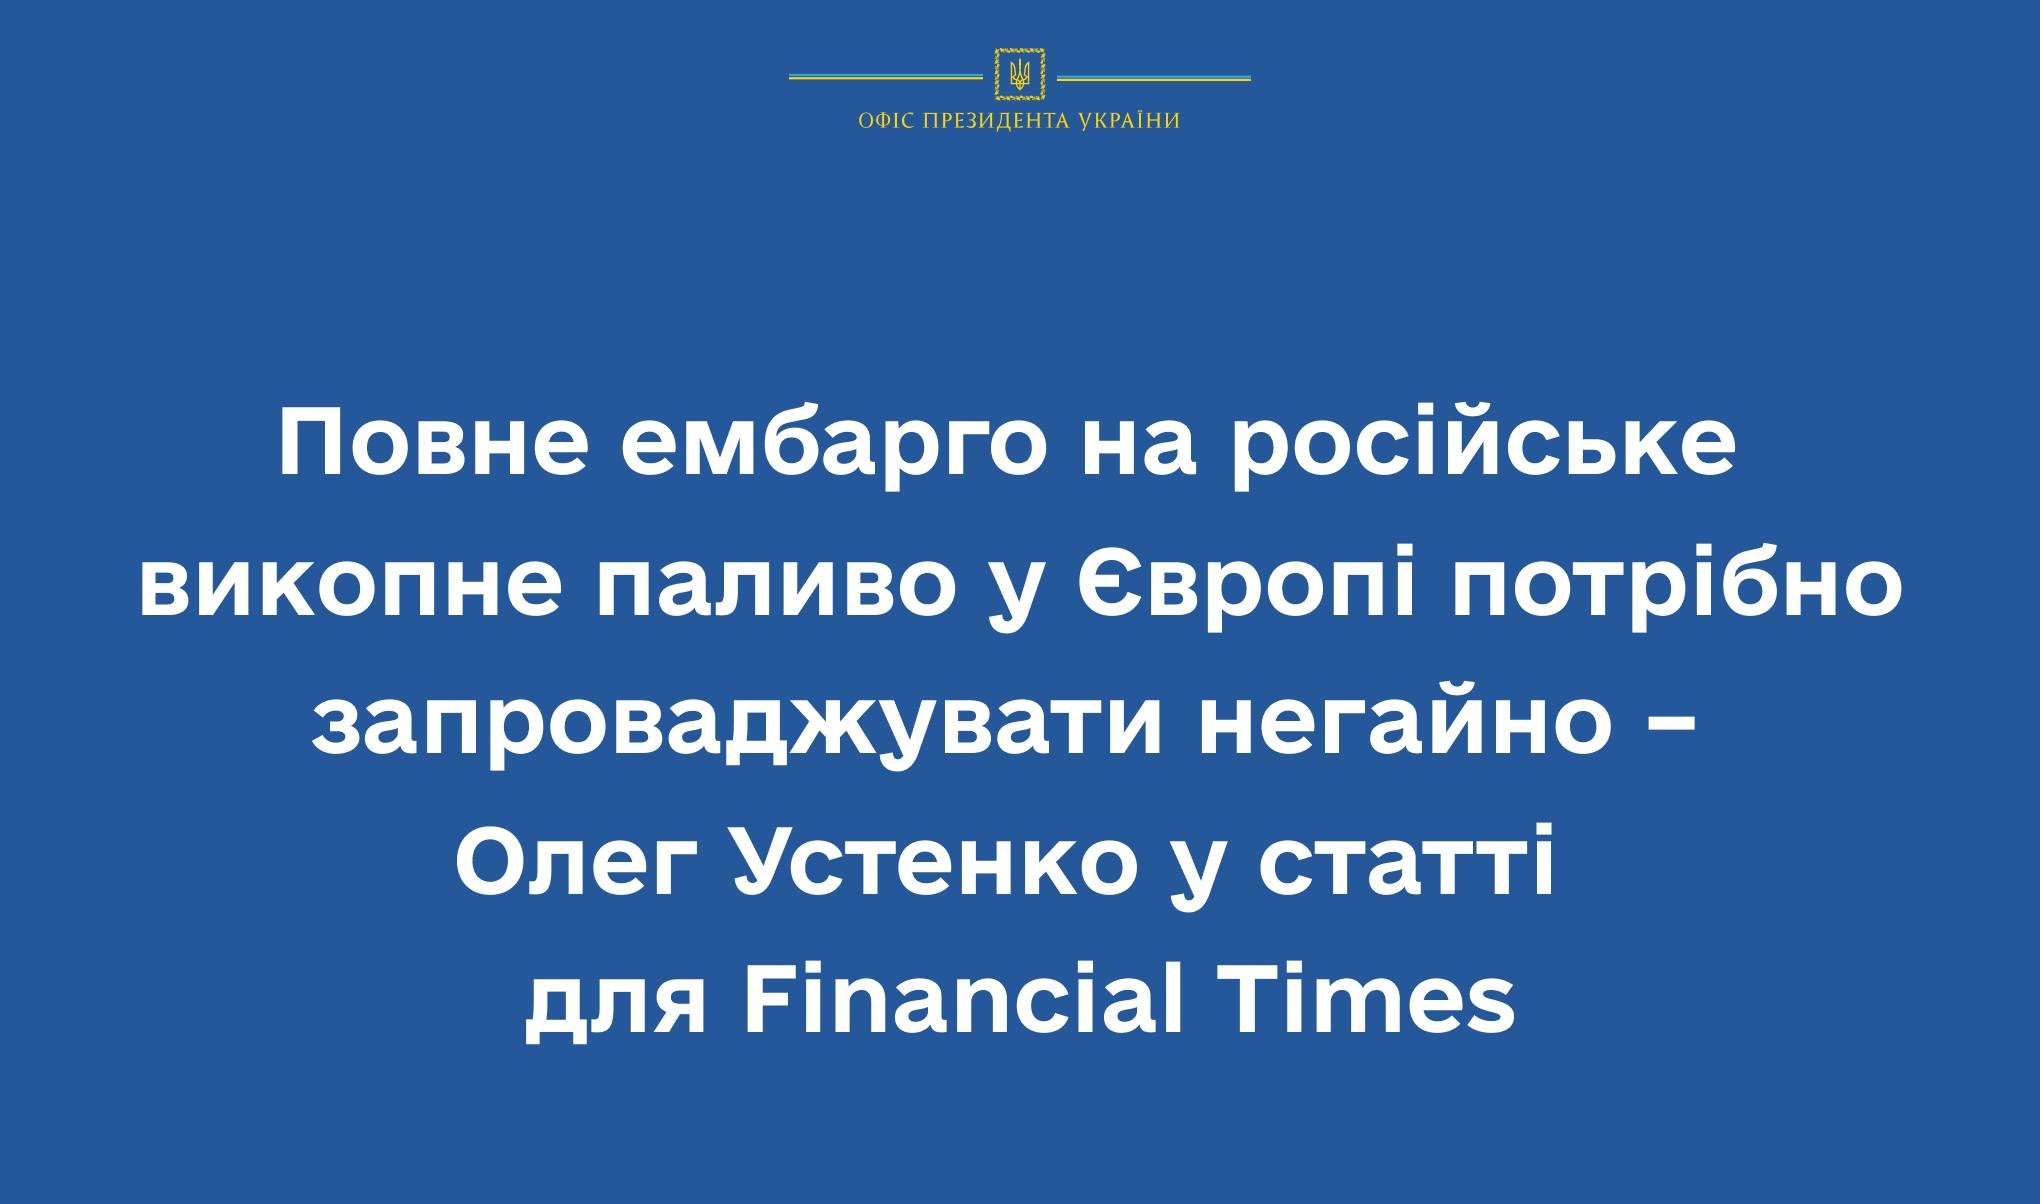 Повне ембарго на російське викопне паливо у Європі потрібно запроваджувати негайно – Олег Устенко у статті для Financial Times